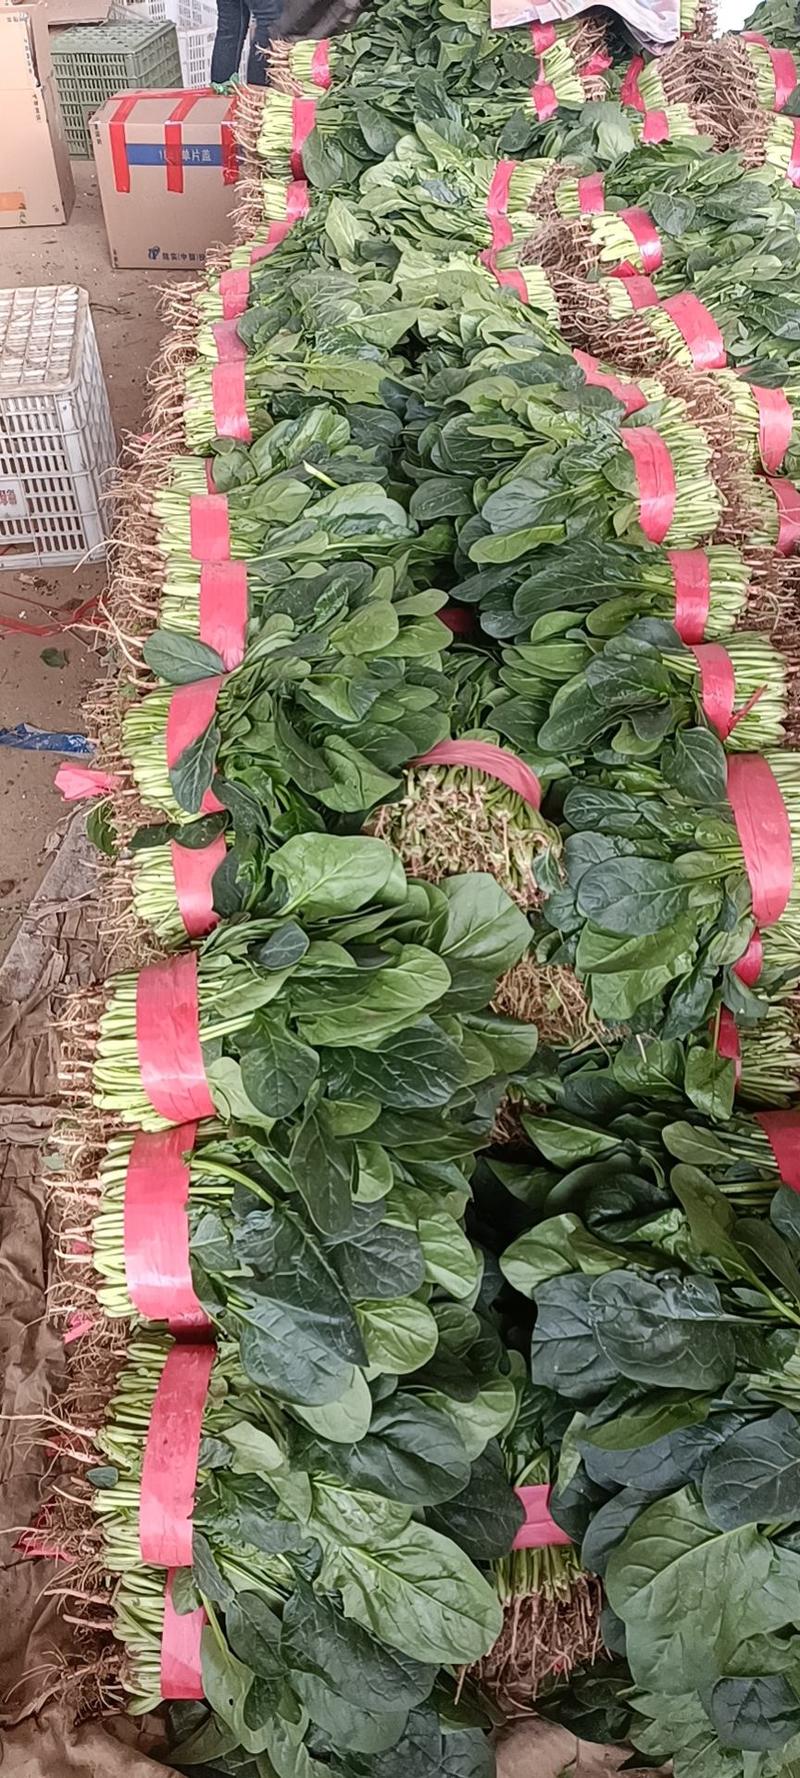 大叶菠菜正常发货畅通无阻量大从优25~30厘米